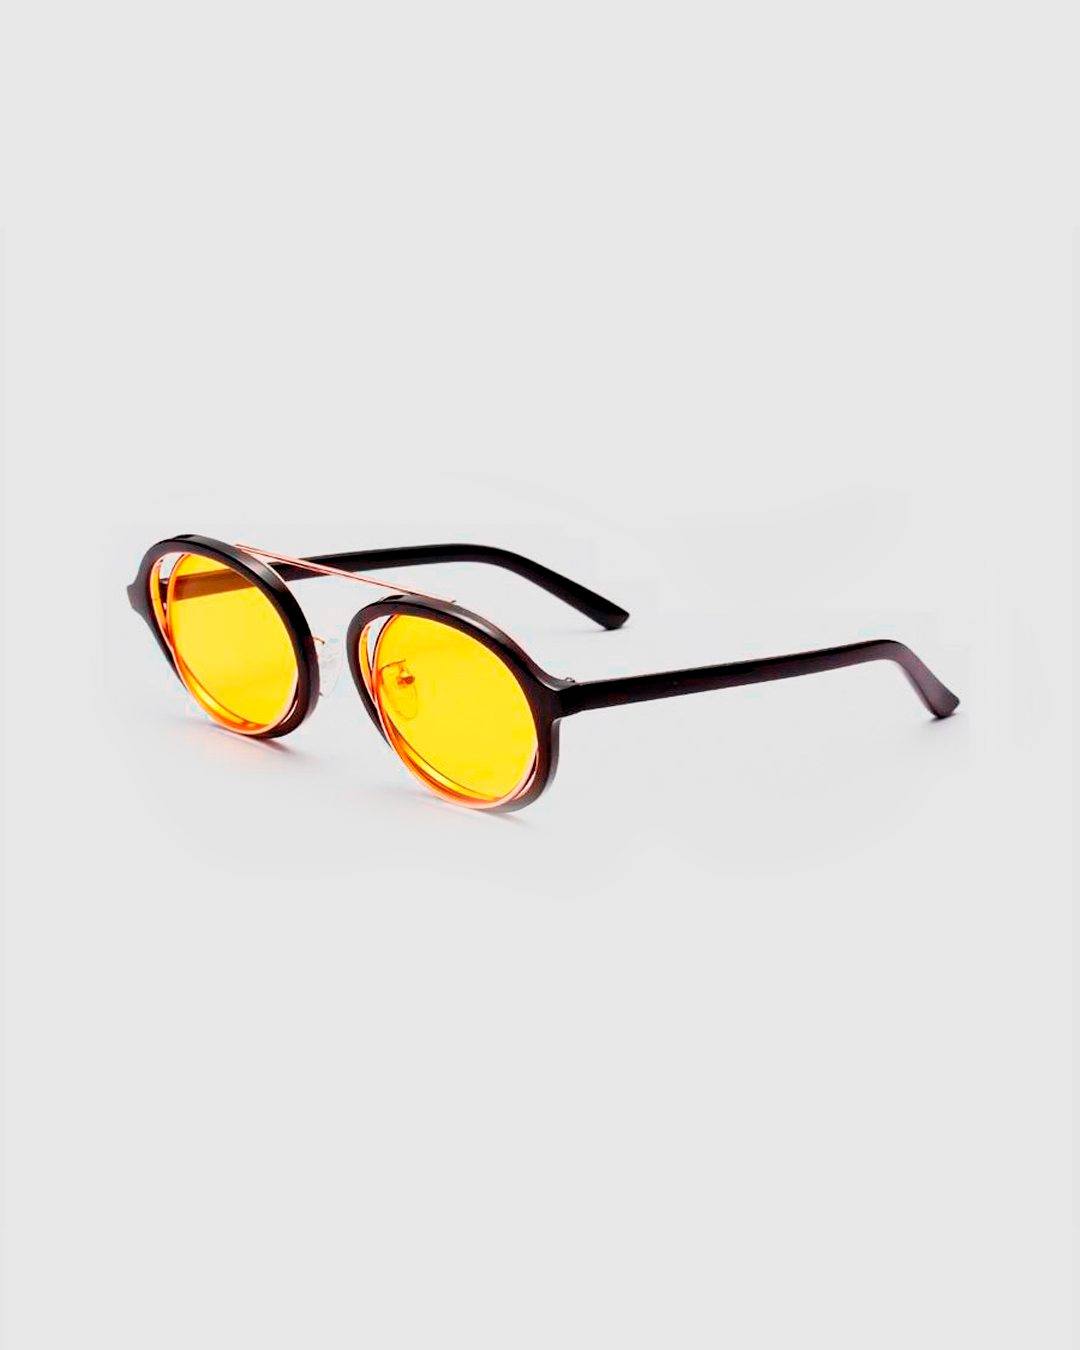 Deadpool Sunglasses